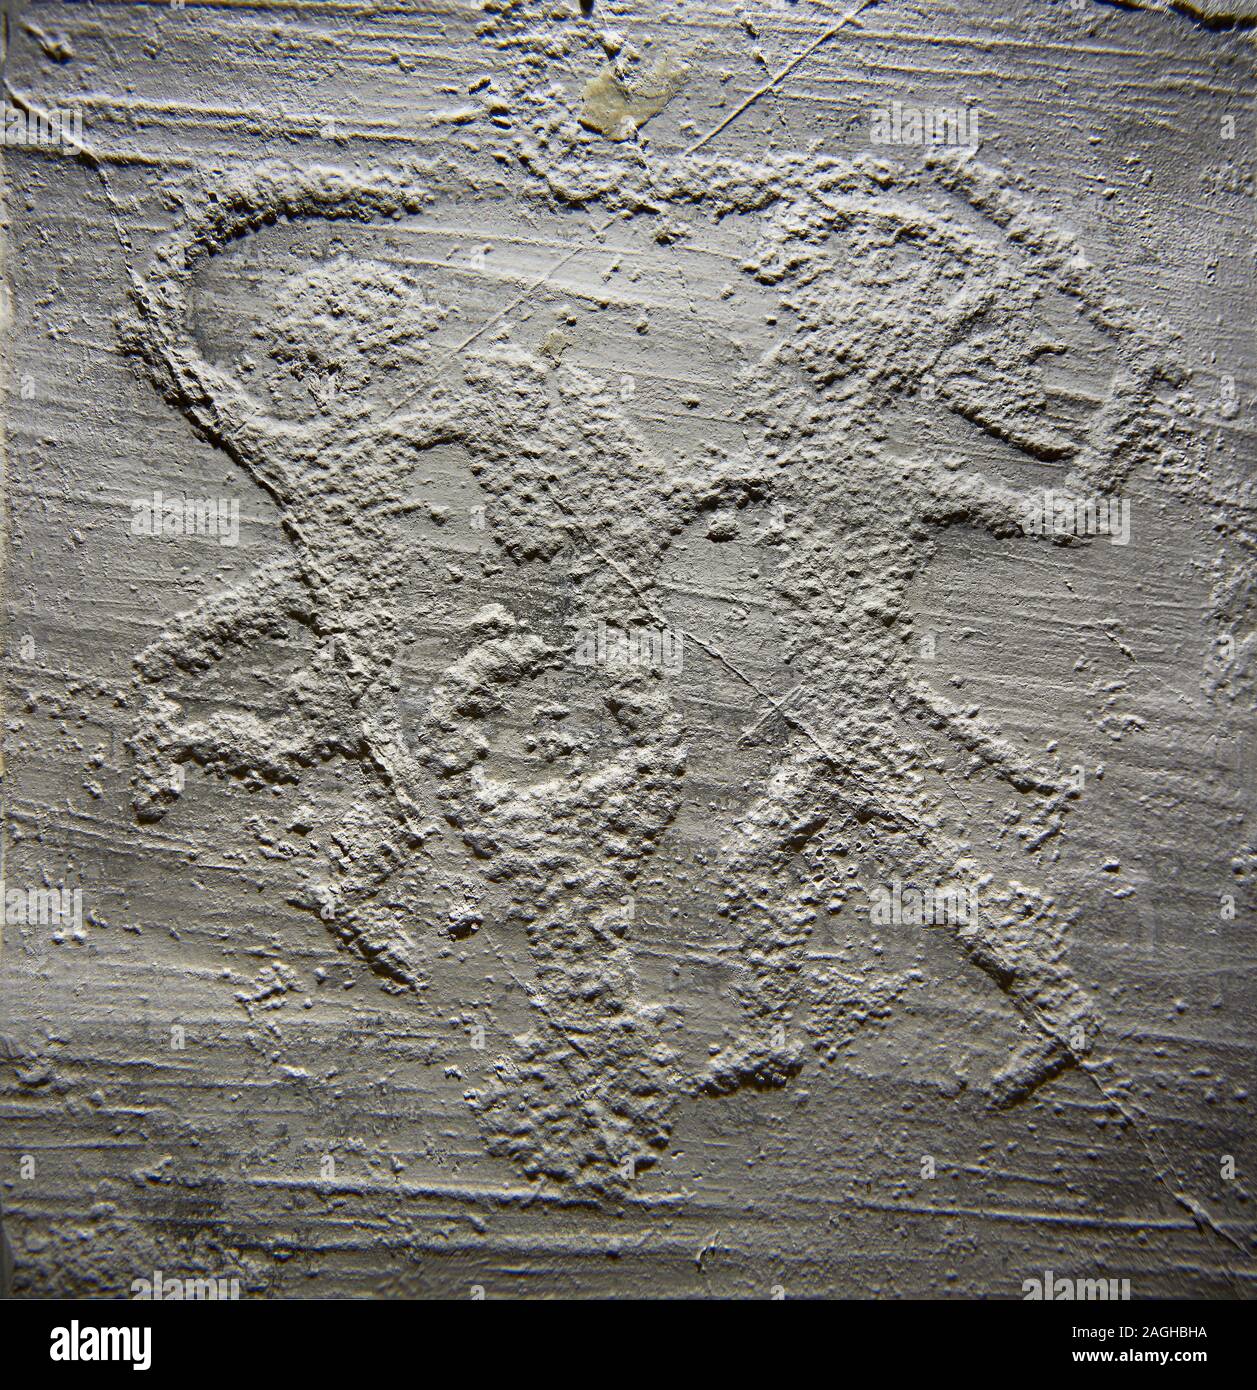 Elenco de un petroglifo prehistórico, tallado en la roca, de dos guerreros con espadas, duelos y shileds Camunni esculpidos por la gente de la edad de hierro entre Foto de stock